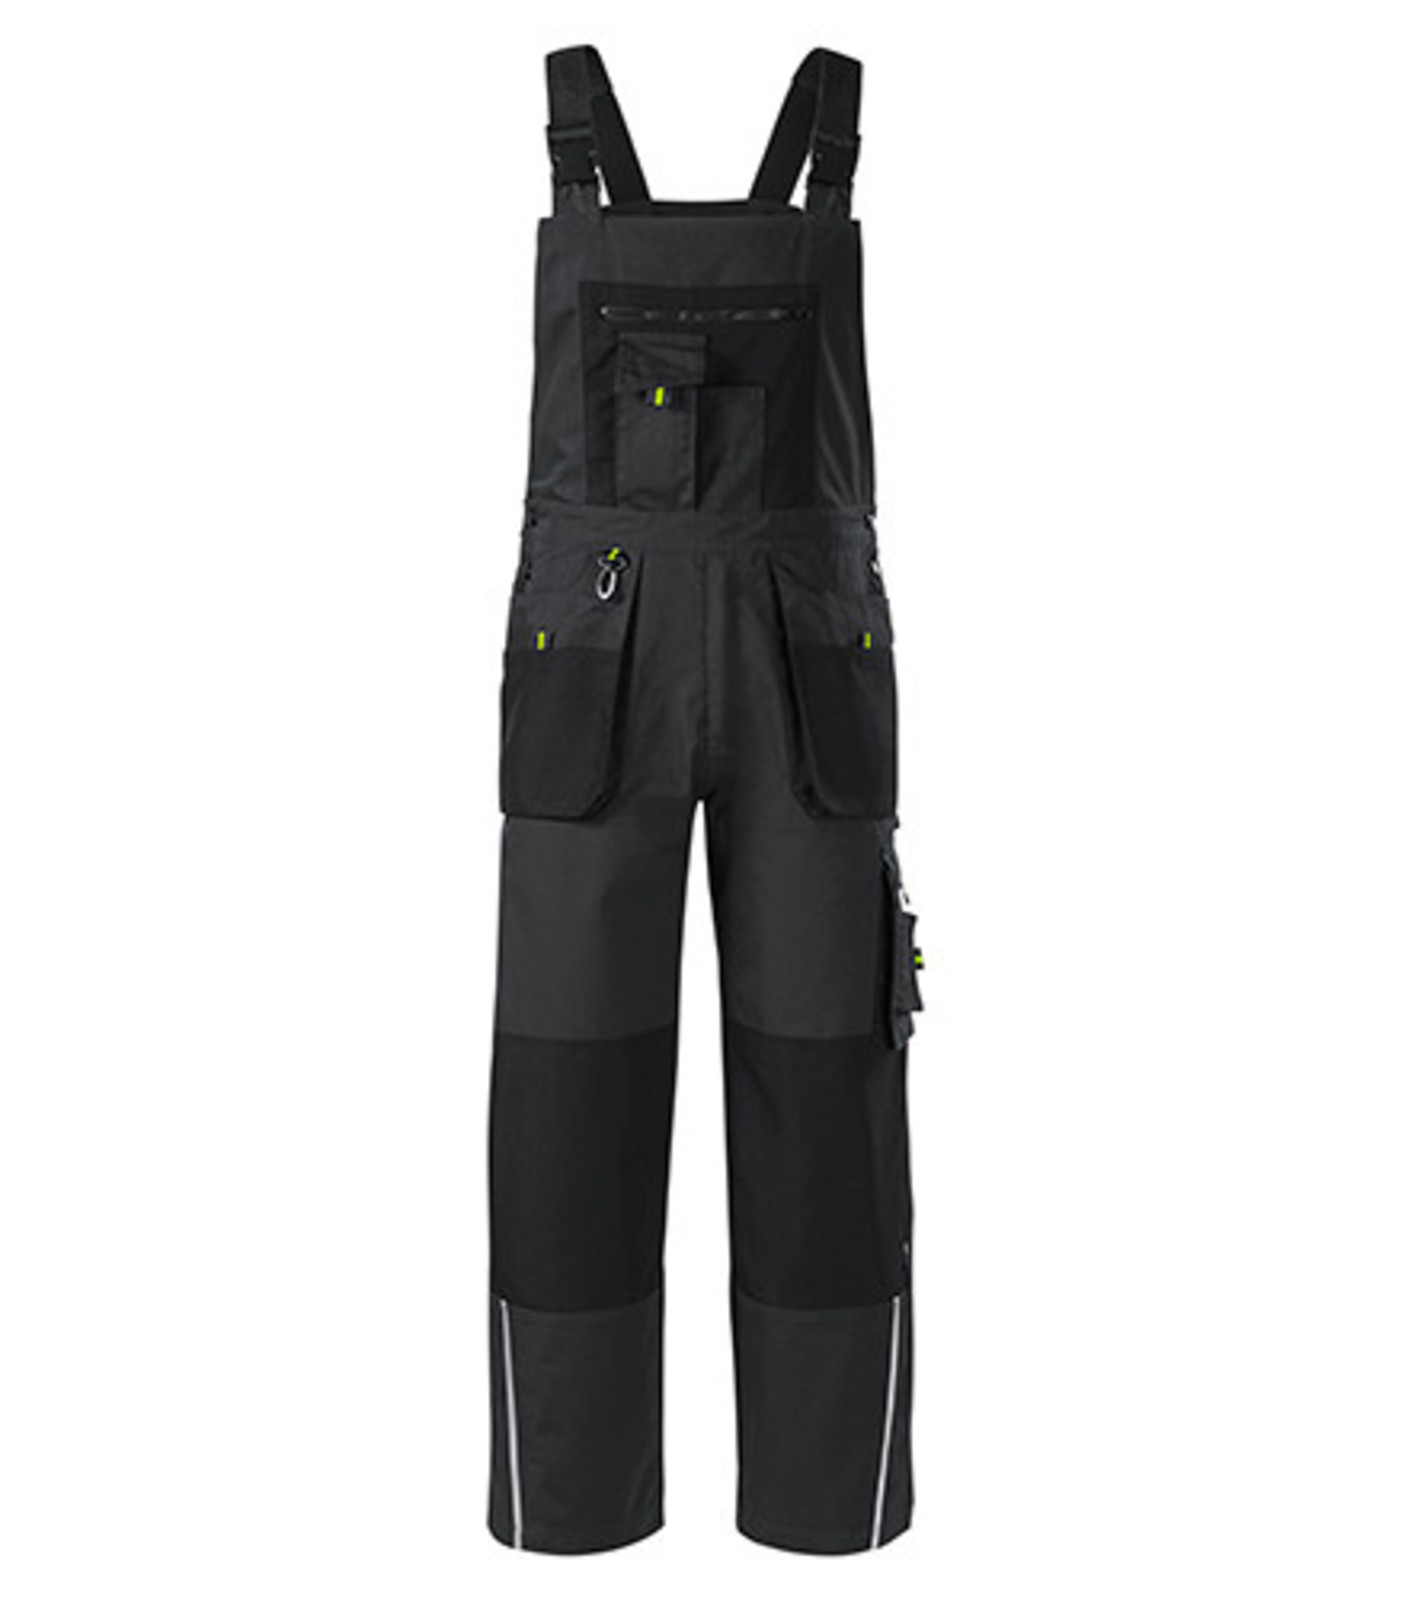 Montérkové nohavice s náprsenkou Adler Ranger W04 - veľkosť: 44-46, farba: šedá ebony